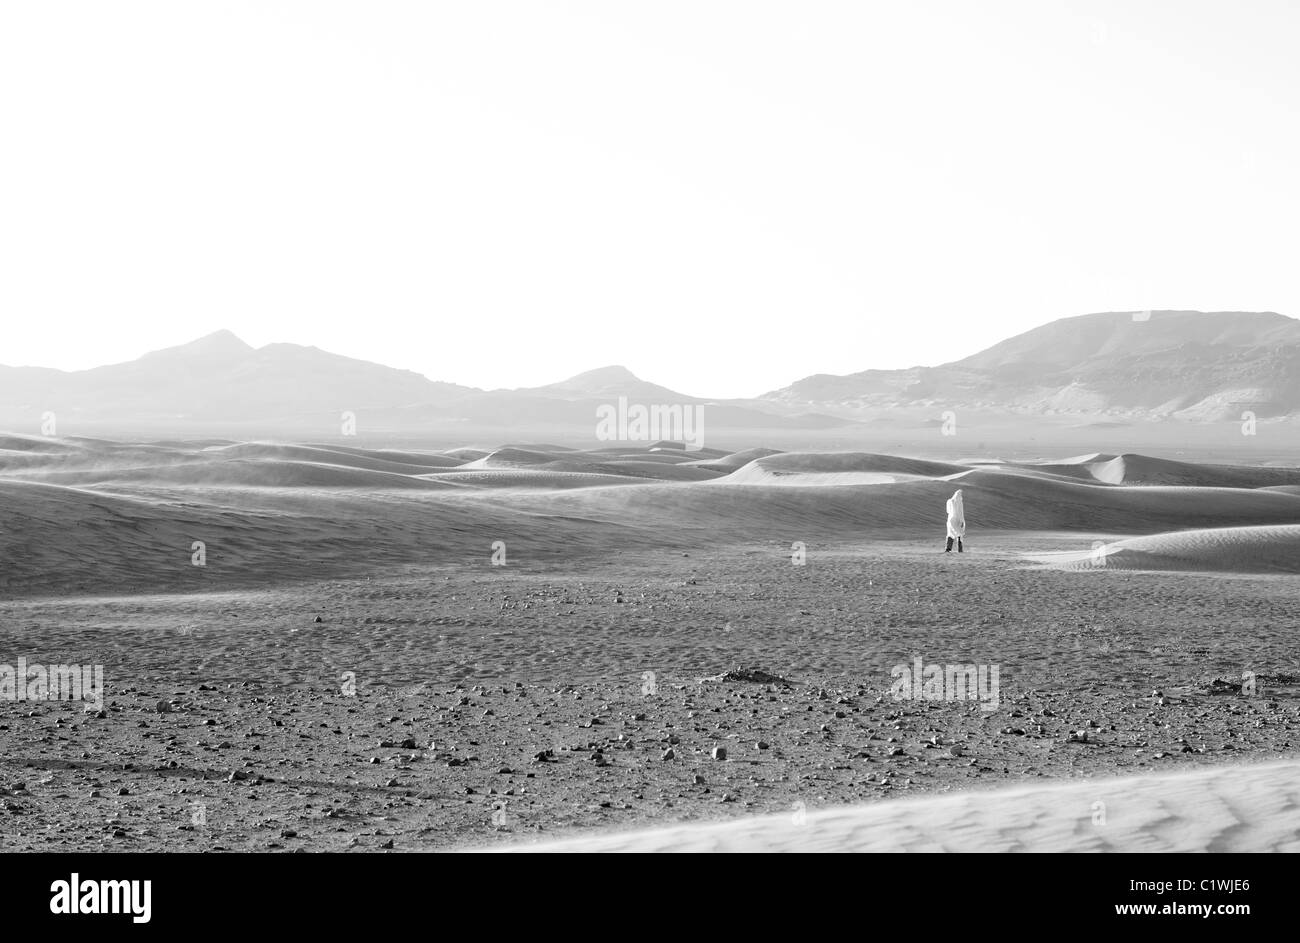 L'homme en présence de vent et de sable érodé (création d'ergs dans le désert entre la chaussée 'desert' la structure du formulaire des terres entre dunes). Banque D'Images